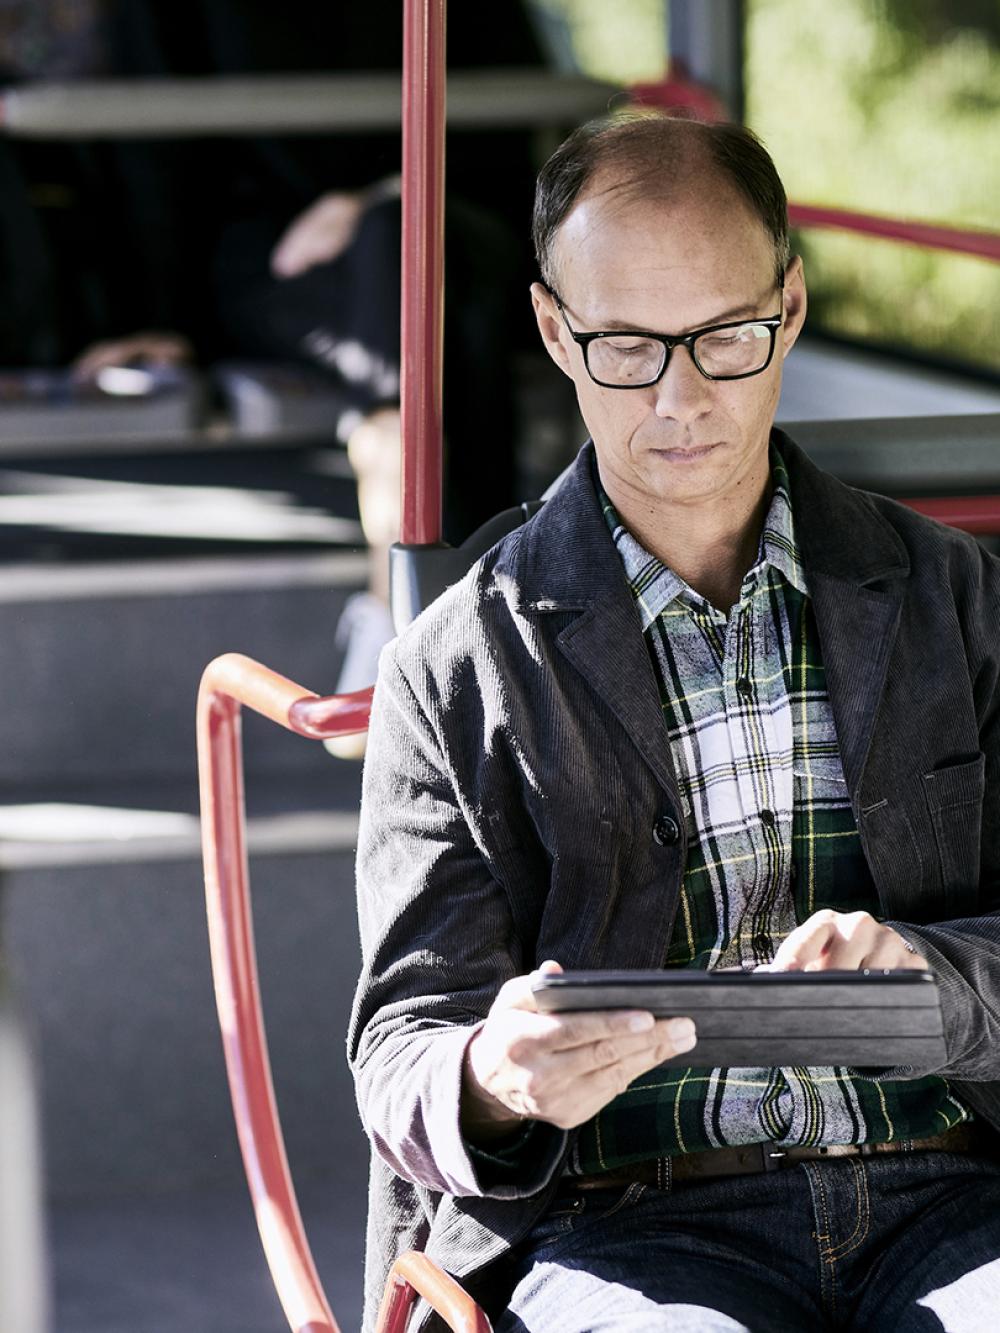 Mobile Arbeitszeiterfassung: Mann sitzt im Bus und erfasst Zeiten auf Tablet.